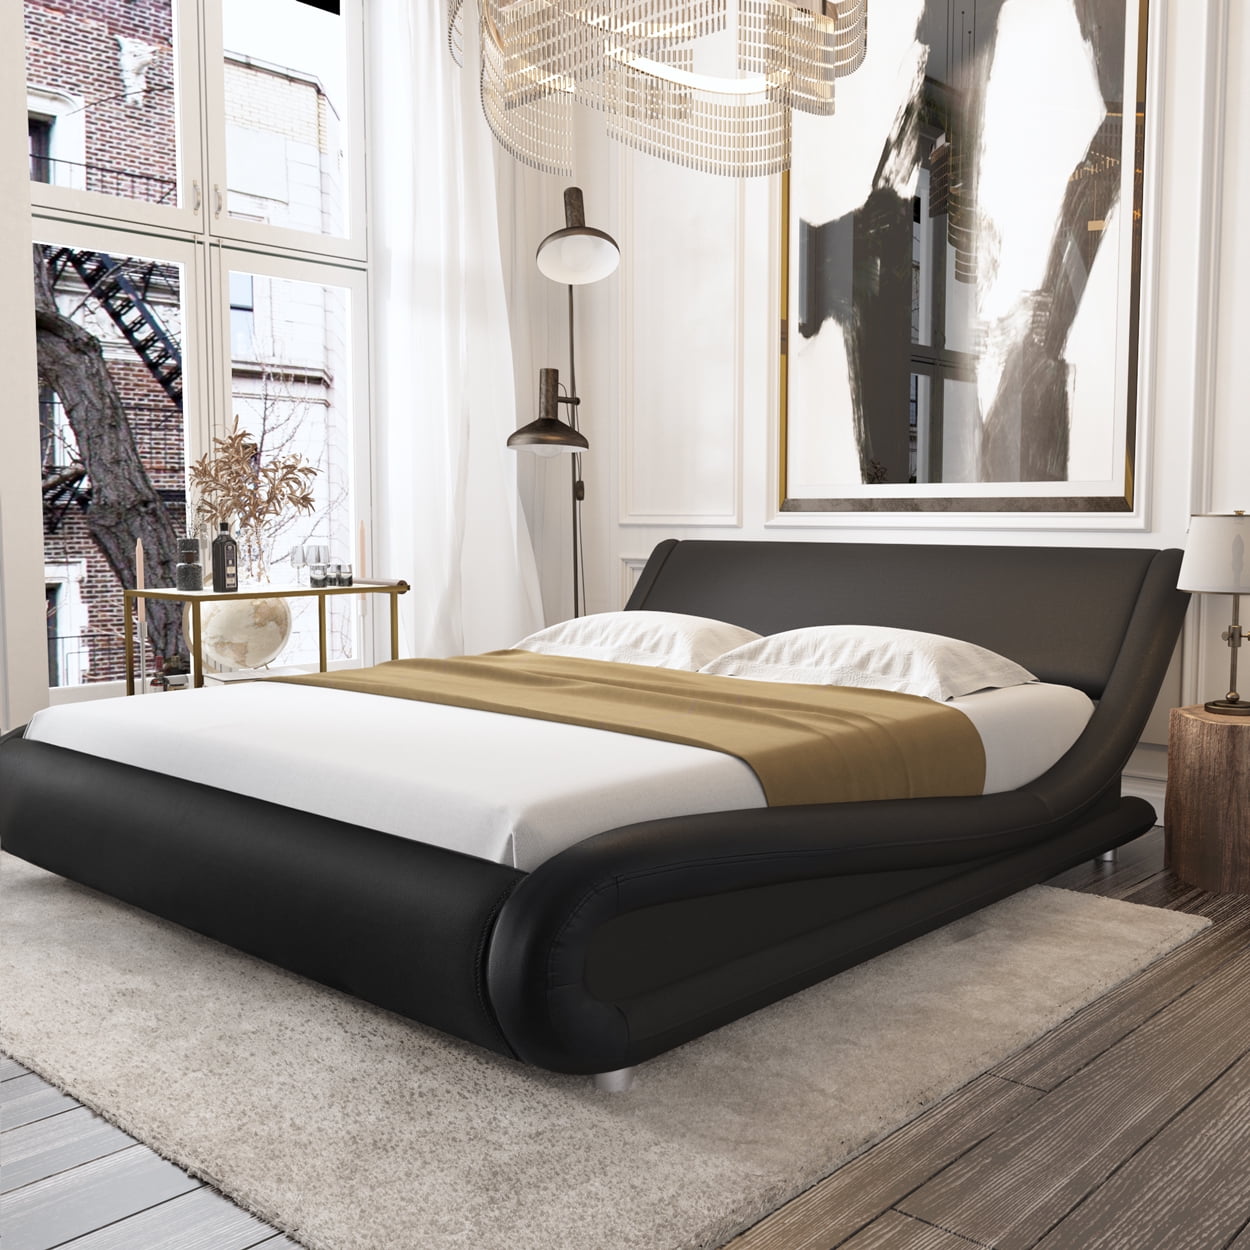 Amolife King Size Bed Frame With Curved, King Platform Bed Frame